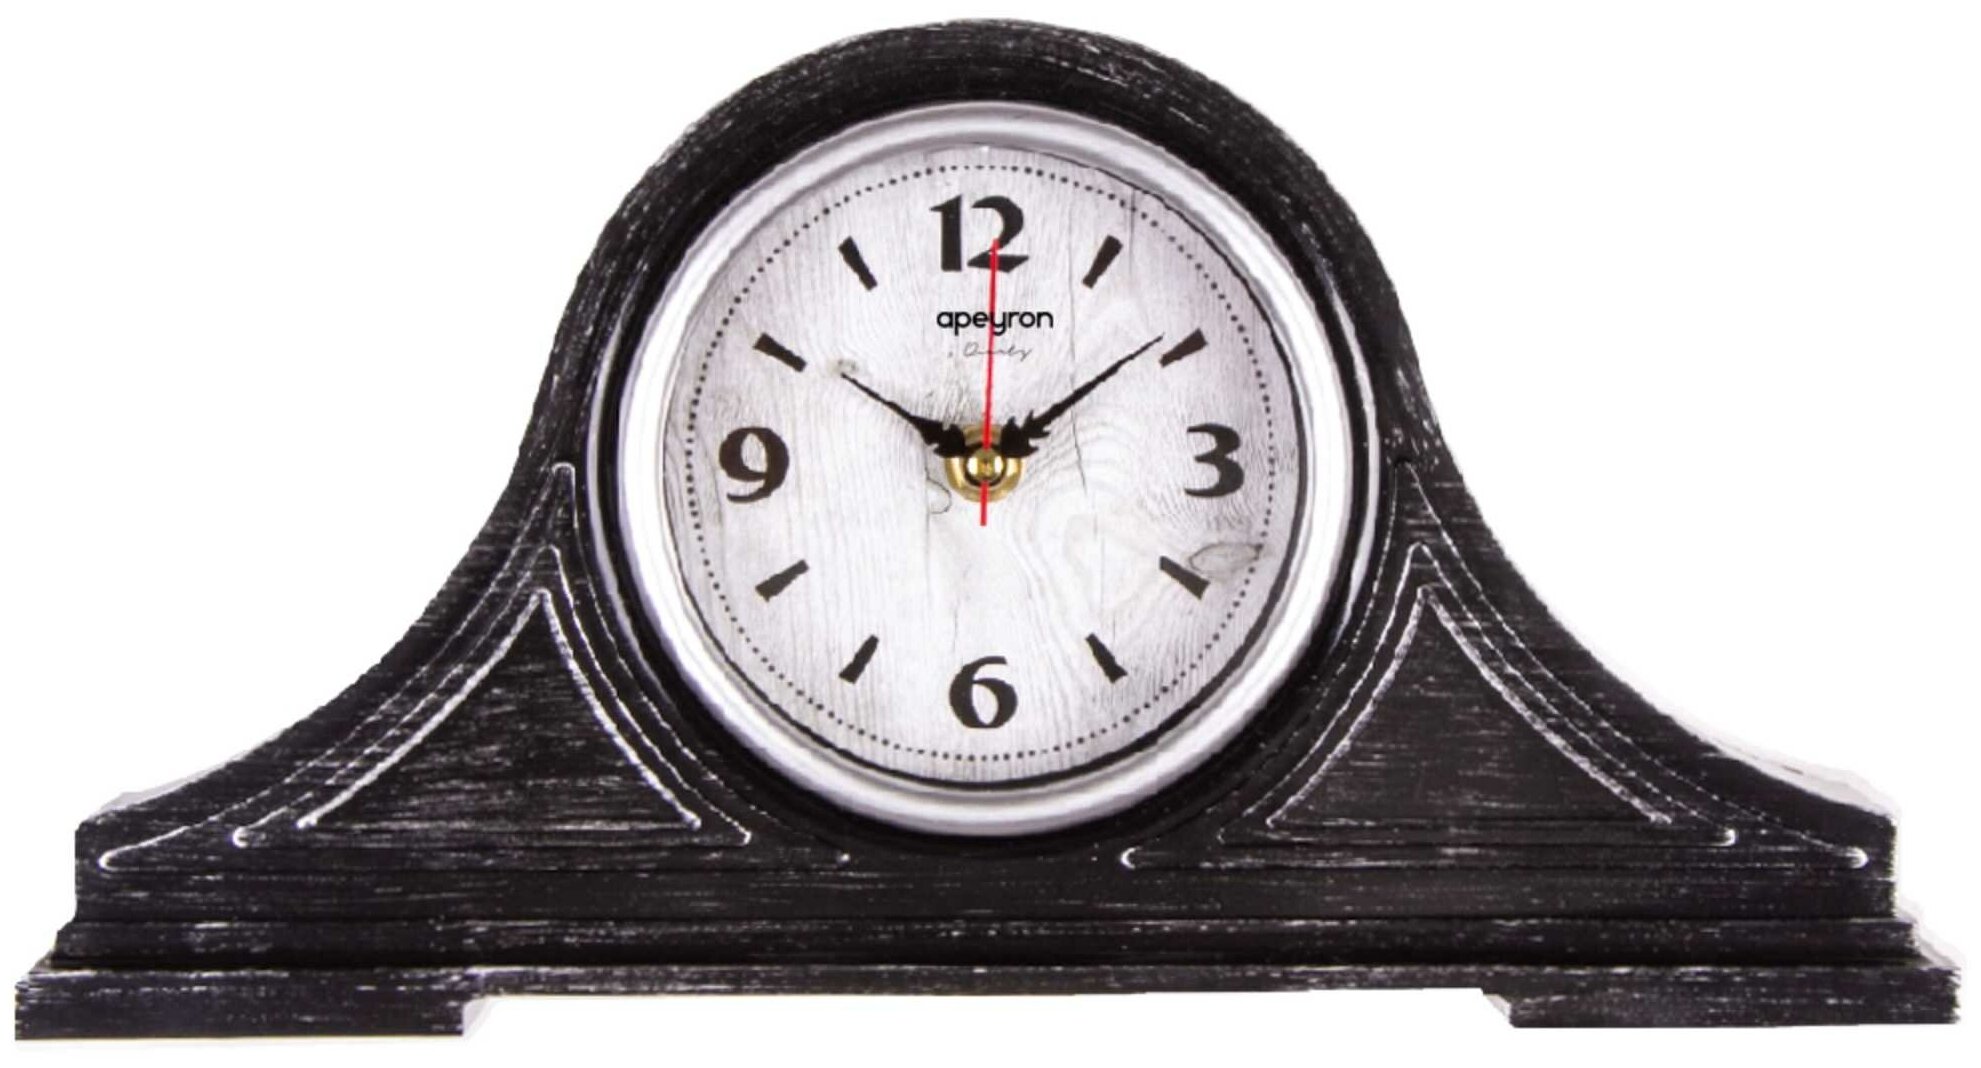 Часы настольные в виде круга, расположенном на основании PLT211306-1, цвет корпуса черный с серебром, пластиковый корпус, размеры 345х180х72 мм, плавный механизм, лицевая сторона часов защищена пластиковым стеклом, работают от батарейки АА